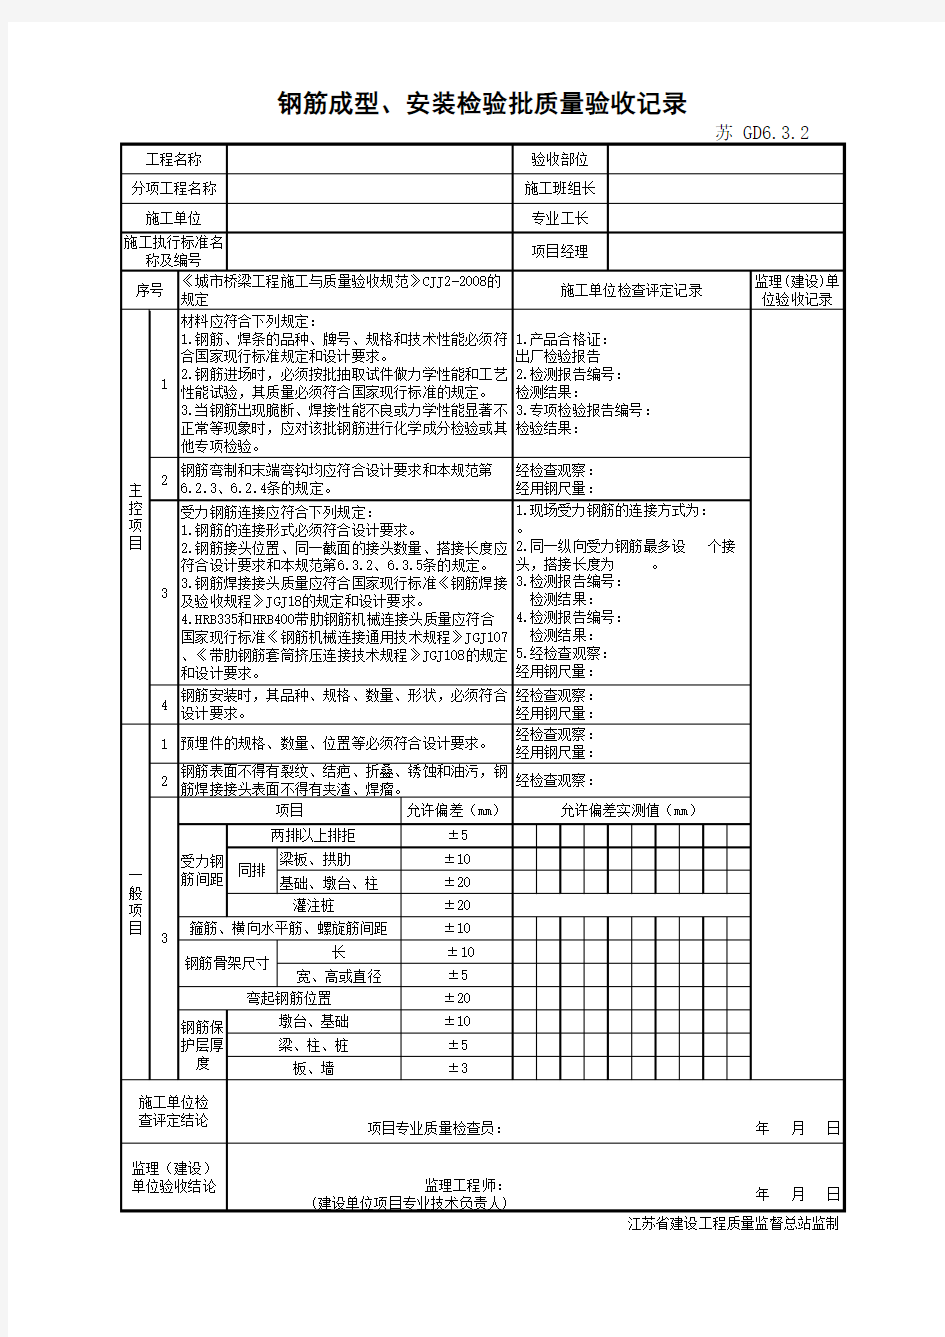 江苏省建设工程质监0190910六版表格文件GD6.3.2